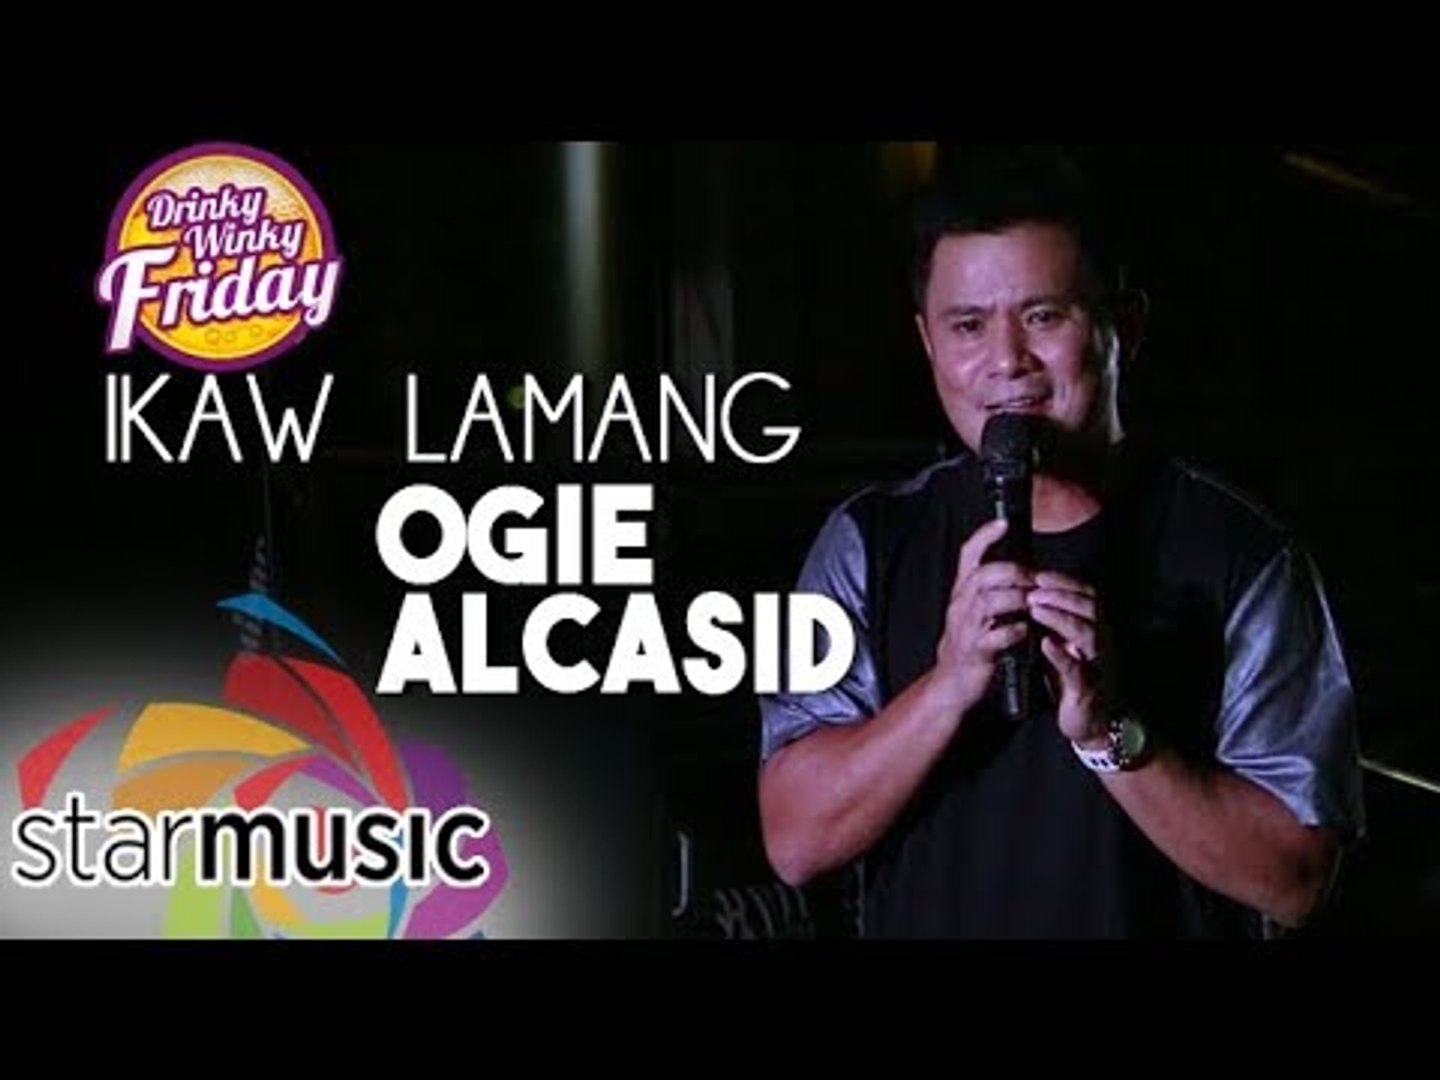 Ogie Alcasid - Ikaw Lamang (Drinky Winky Friday)